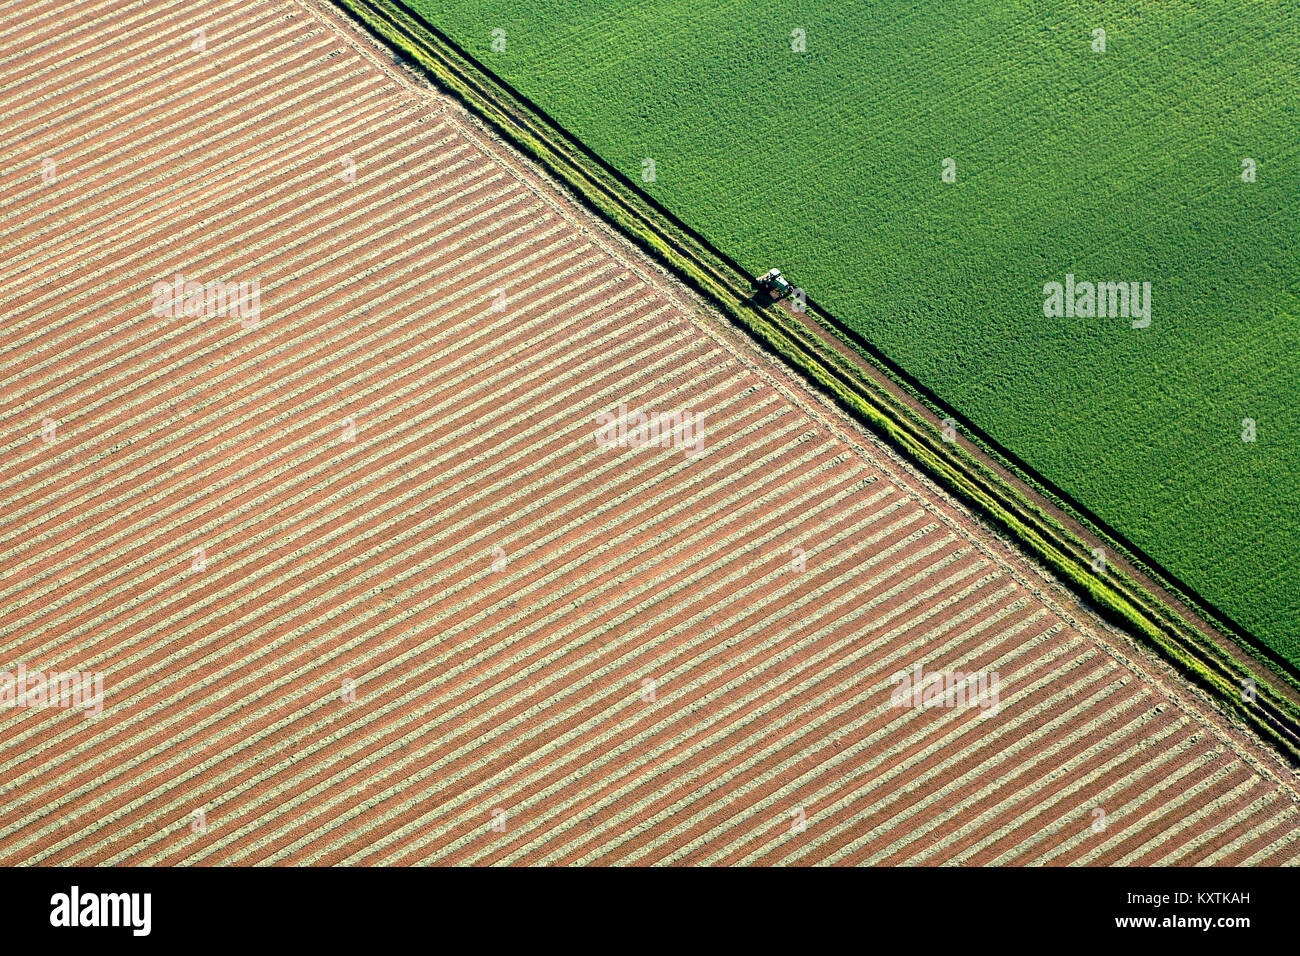 Fotografía aérea en tierras agrícolas en el valle de Napa con agricultores trabajando. gráfico ángulos interesantes líneas de colores verdes y beige Foto de stock